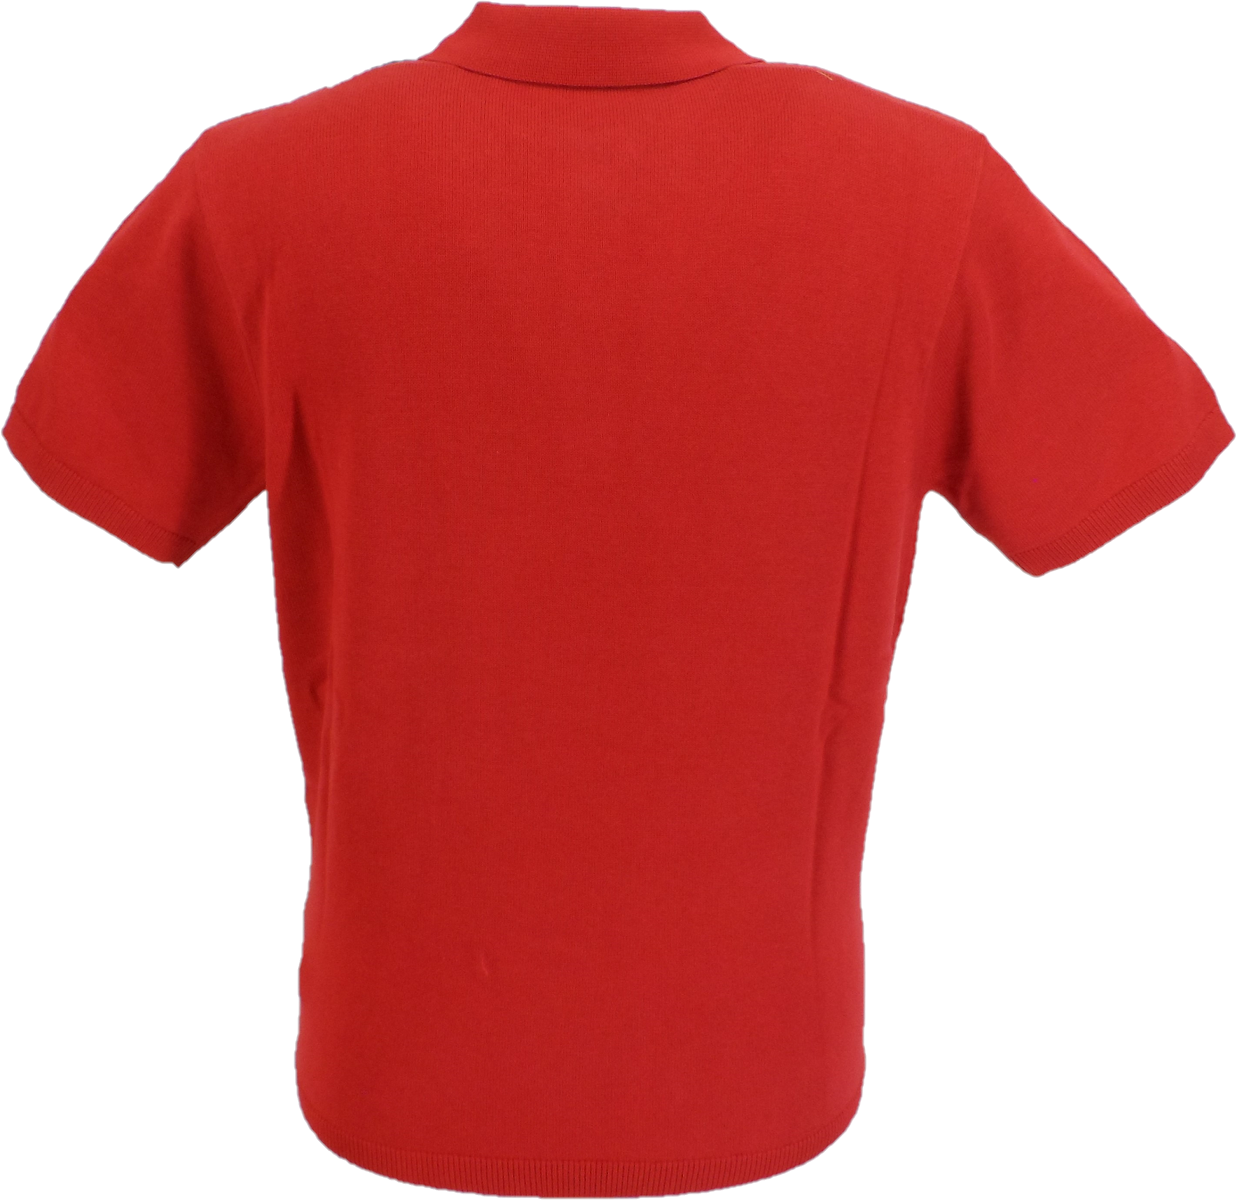 Polo da uomo in maglia testurizzata rosso granato Gabicci Vintage